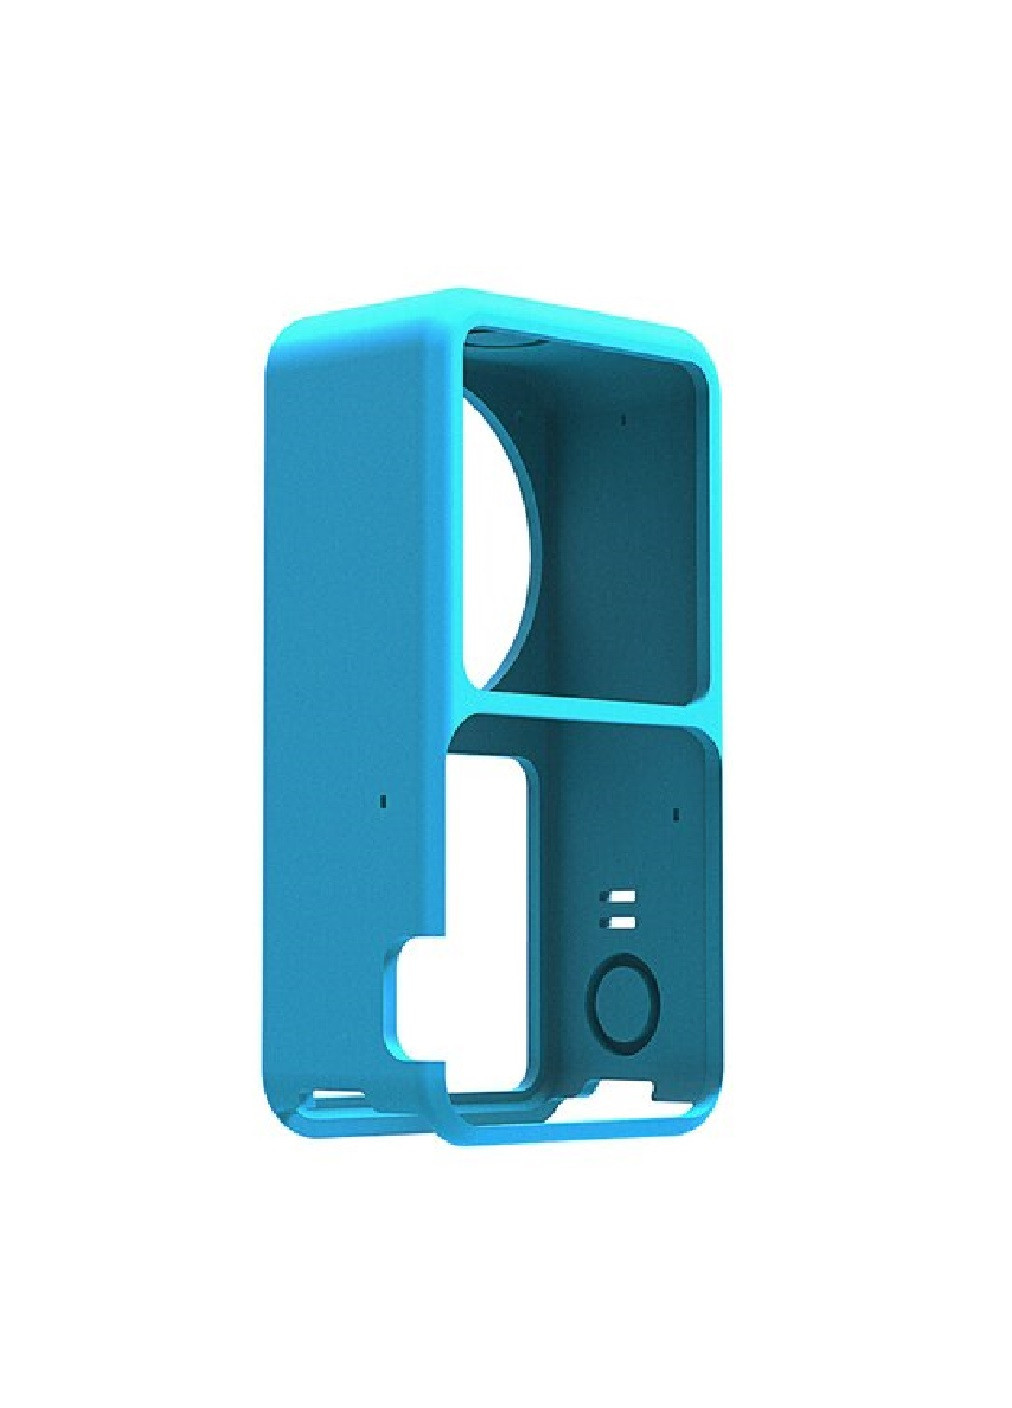 Защитный силиконовый чехол защита от пыли загрязнения царапин ударов для экшн камеры для DJI Action 2 (474925-Prob) Синий Unbranded (260377381)